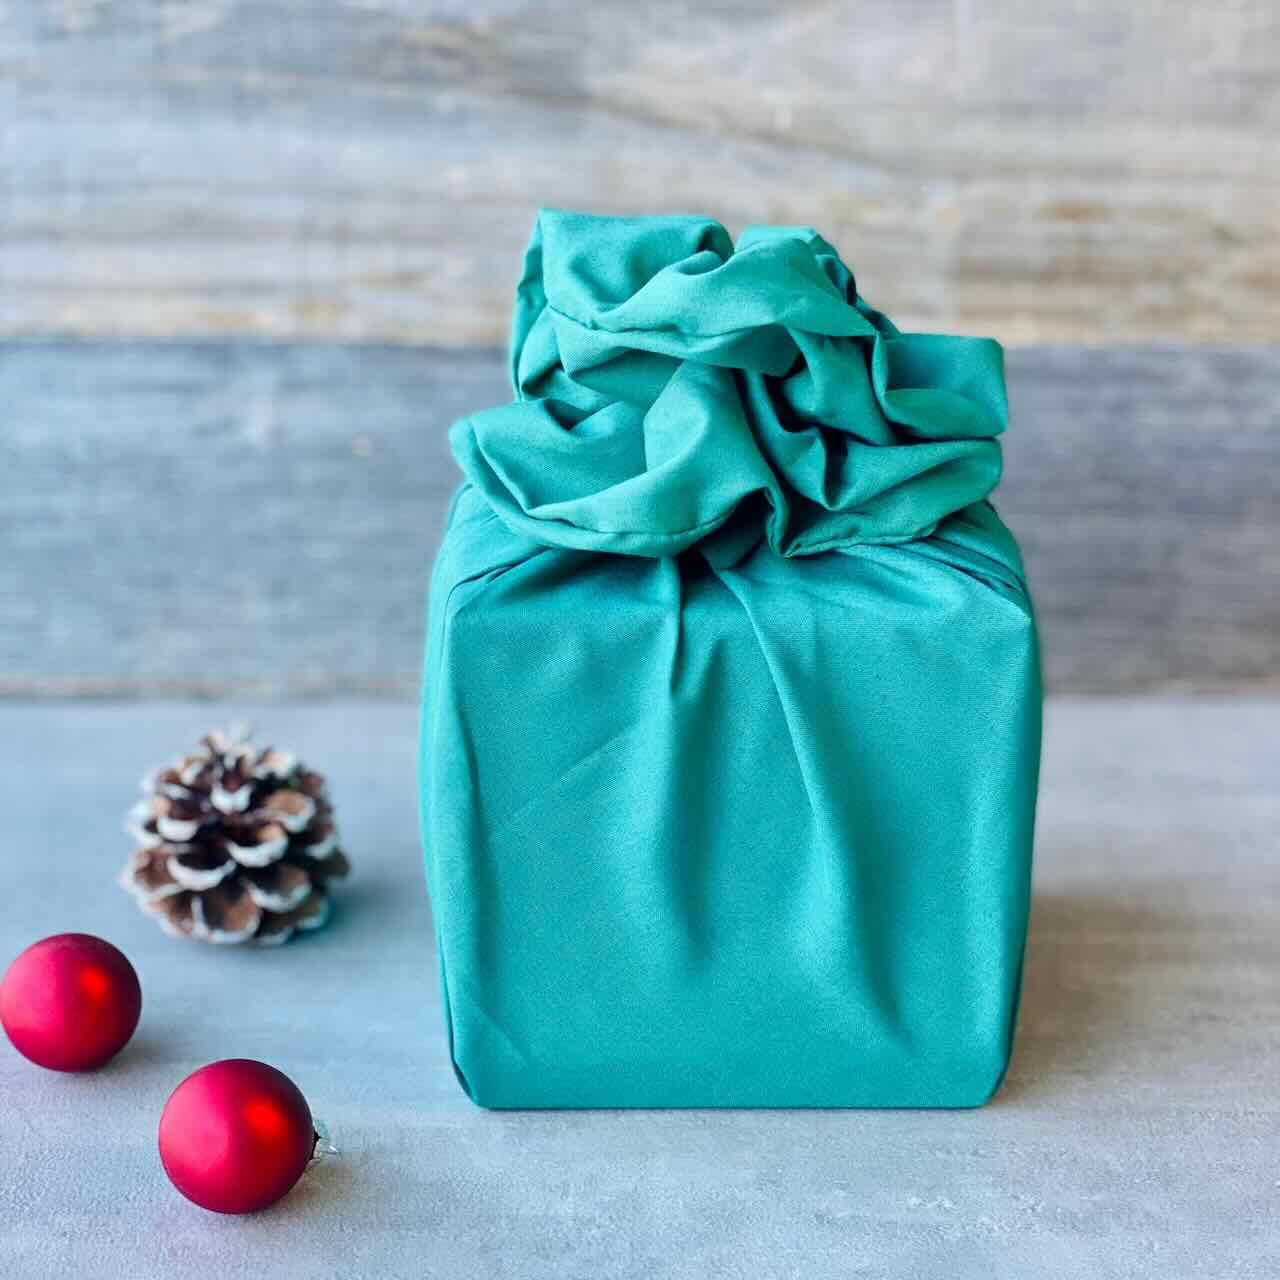 Furoshiki gift wrapping cloths - Large